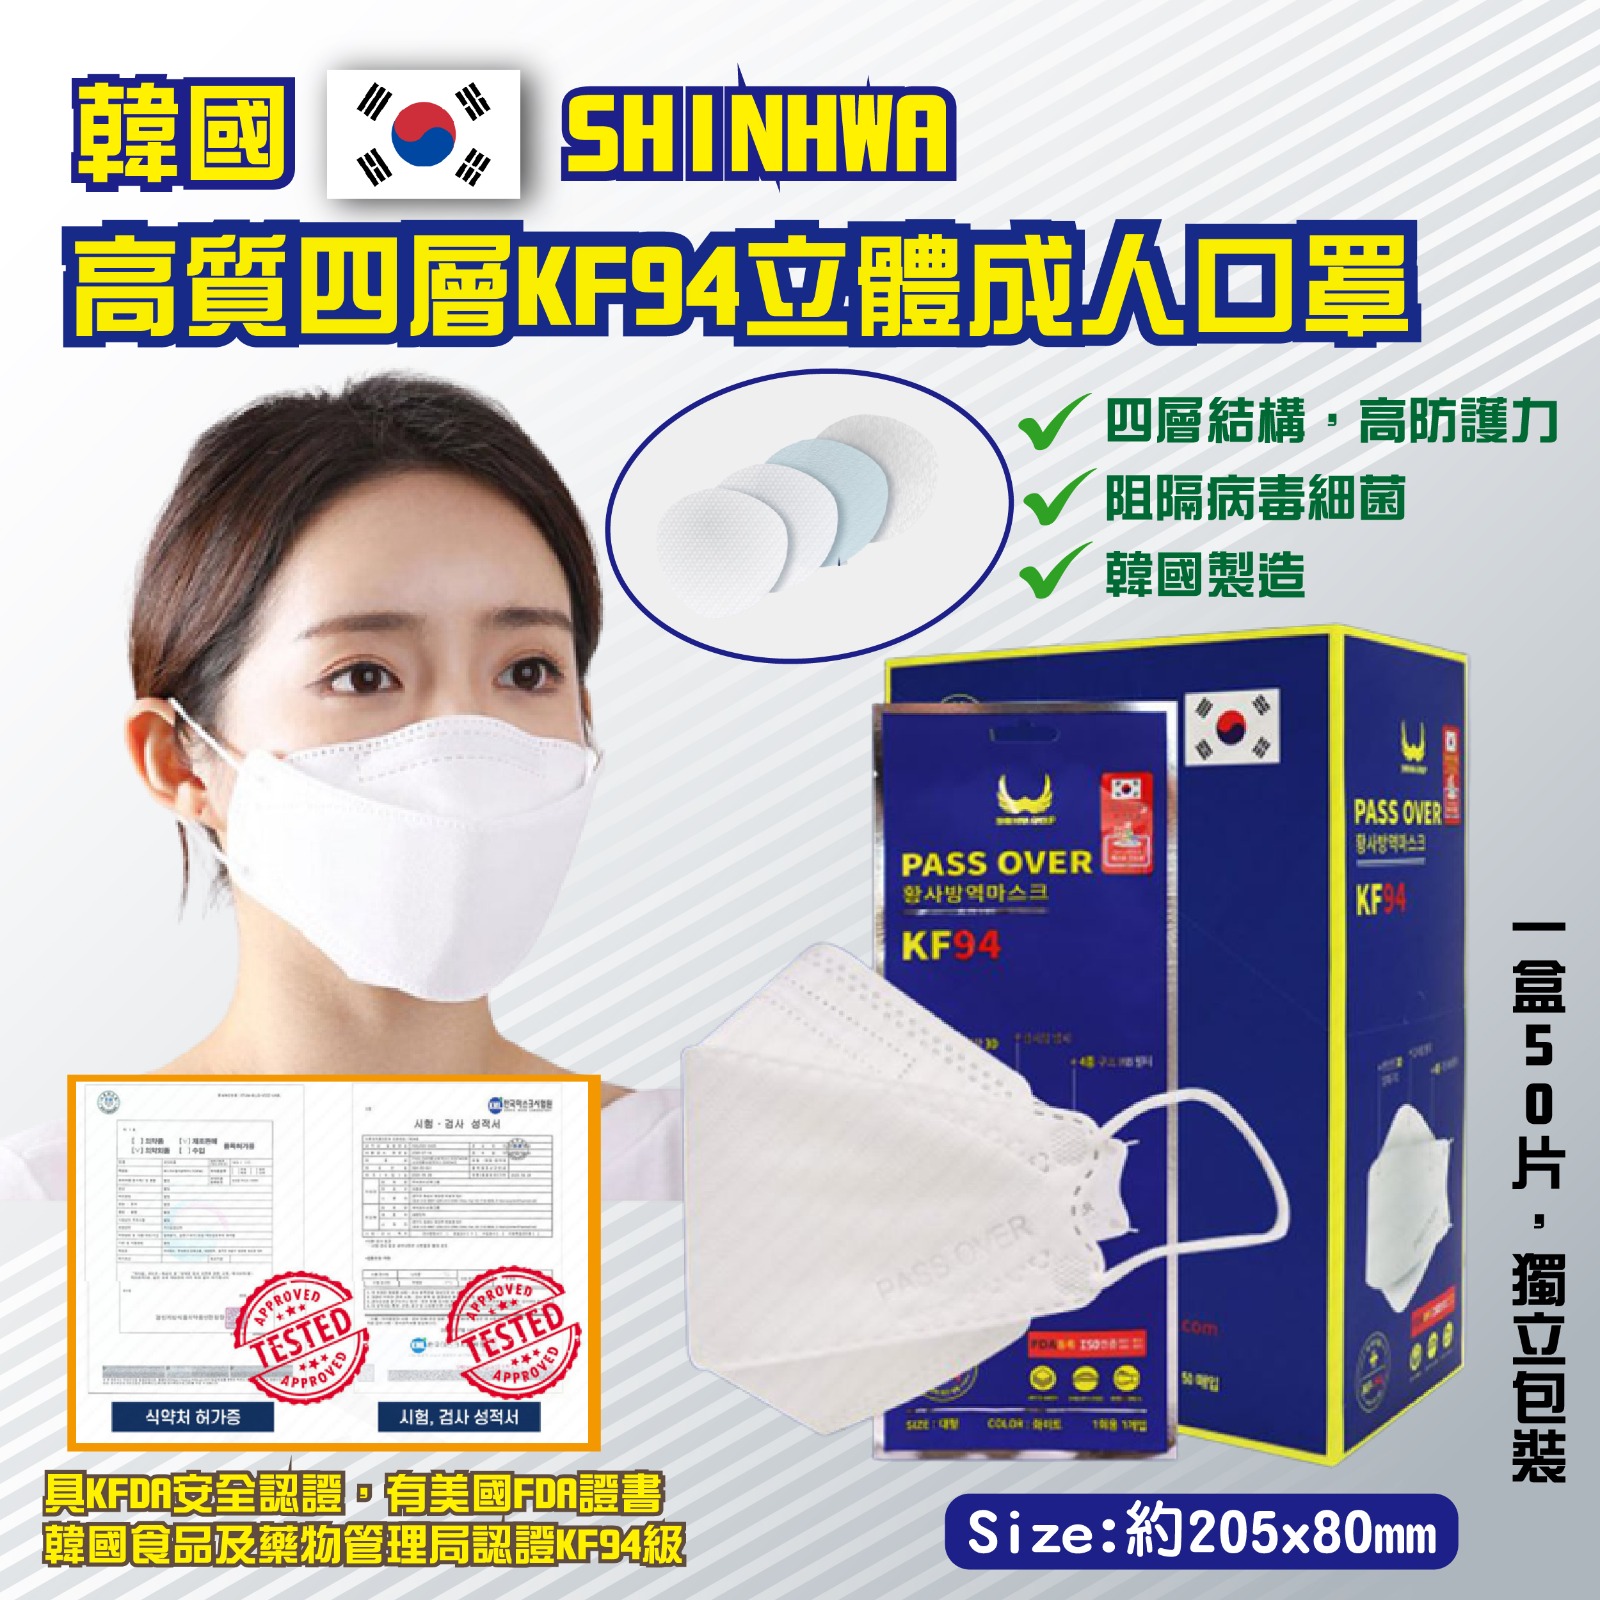 韓國 SHINHWA KF94 高質四層立體成人口罩 (1盒50片| 獨立包裝)  【現貨】